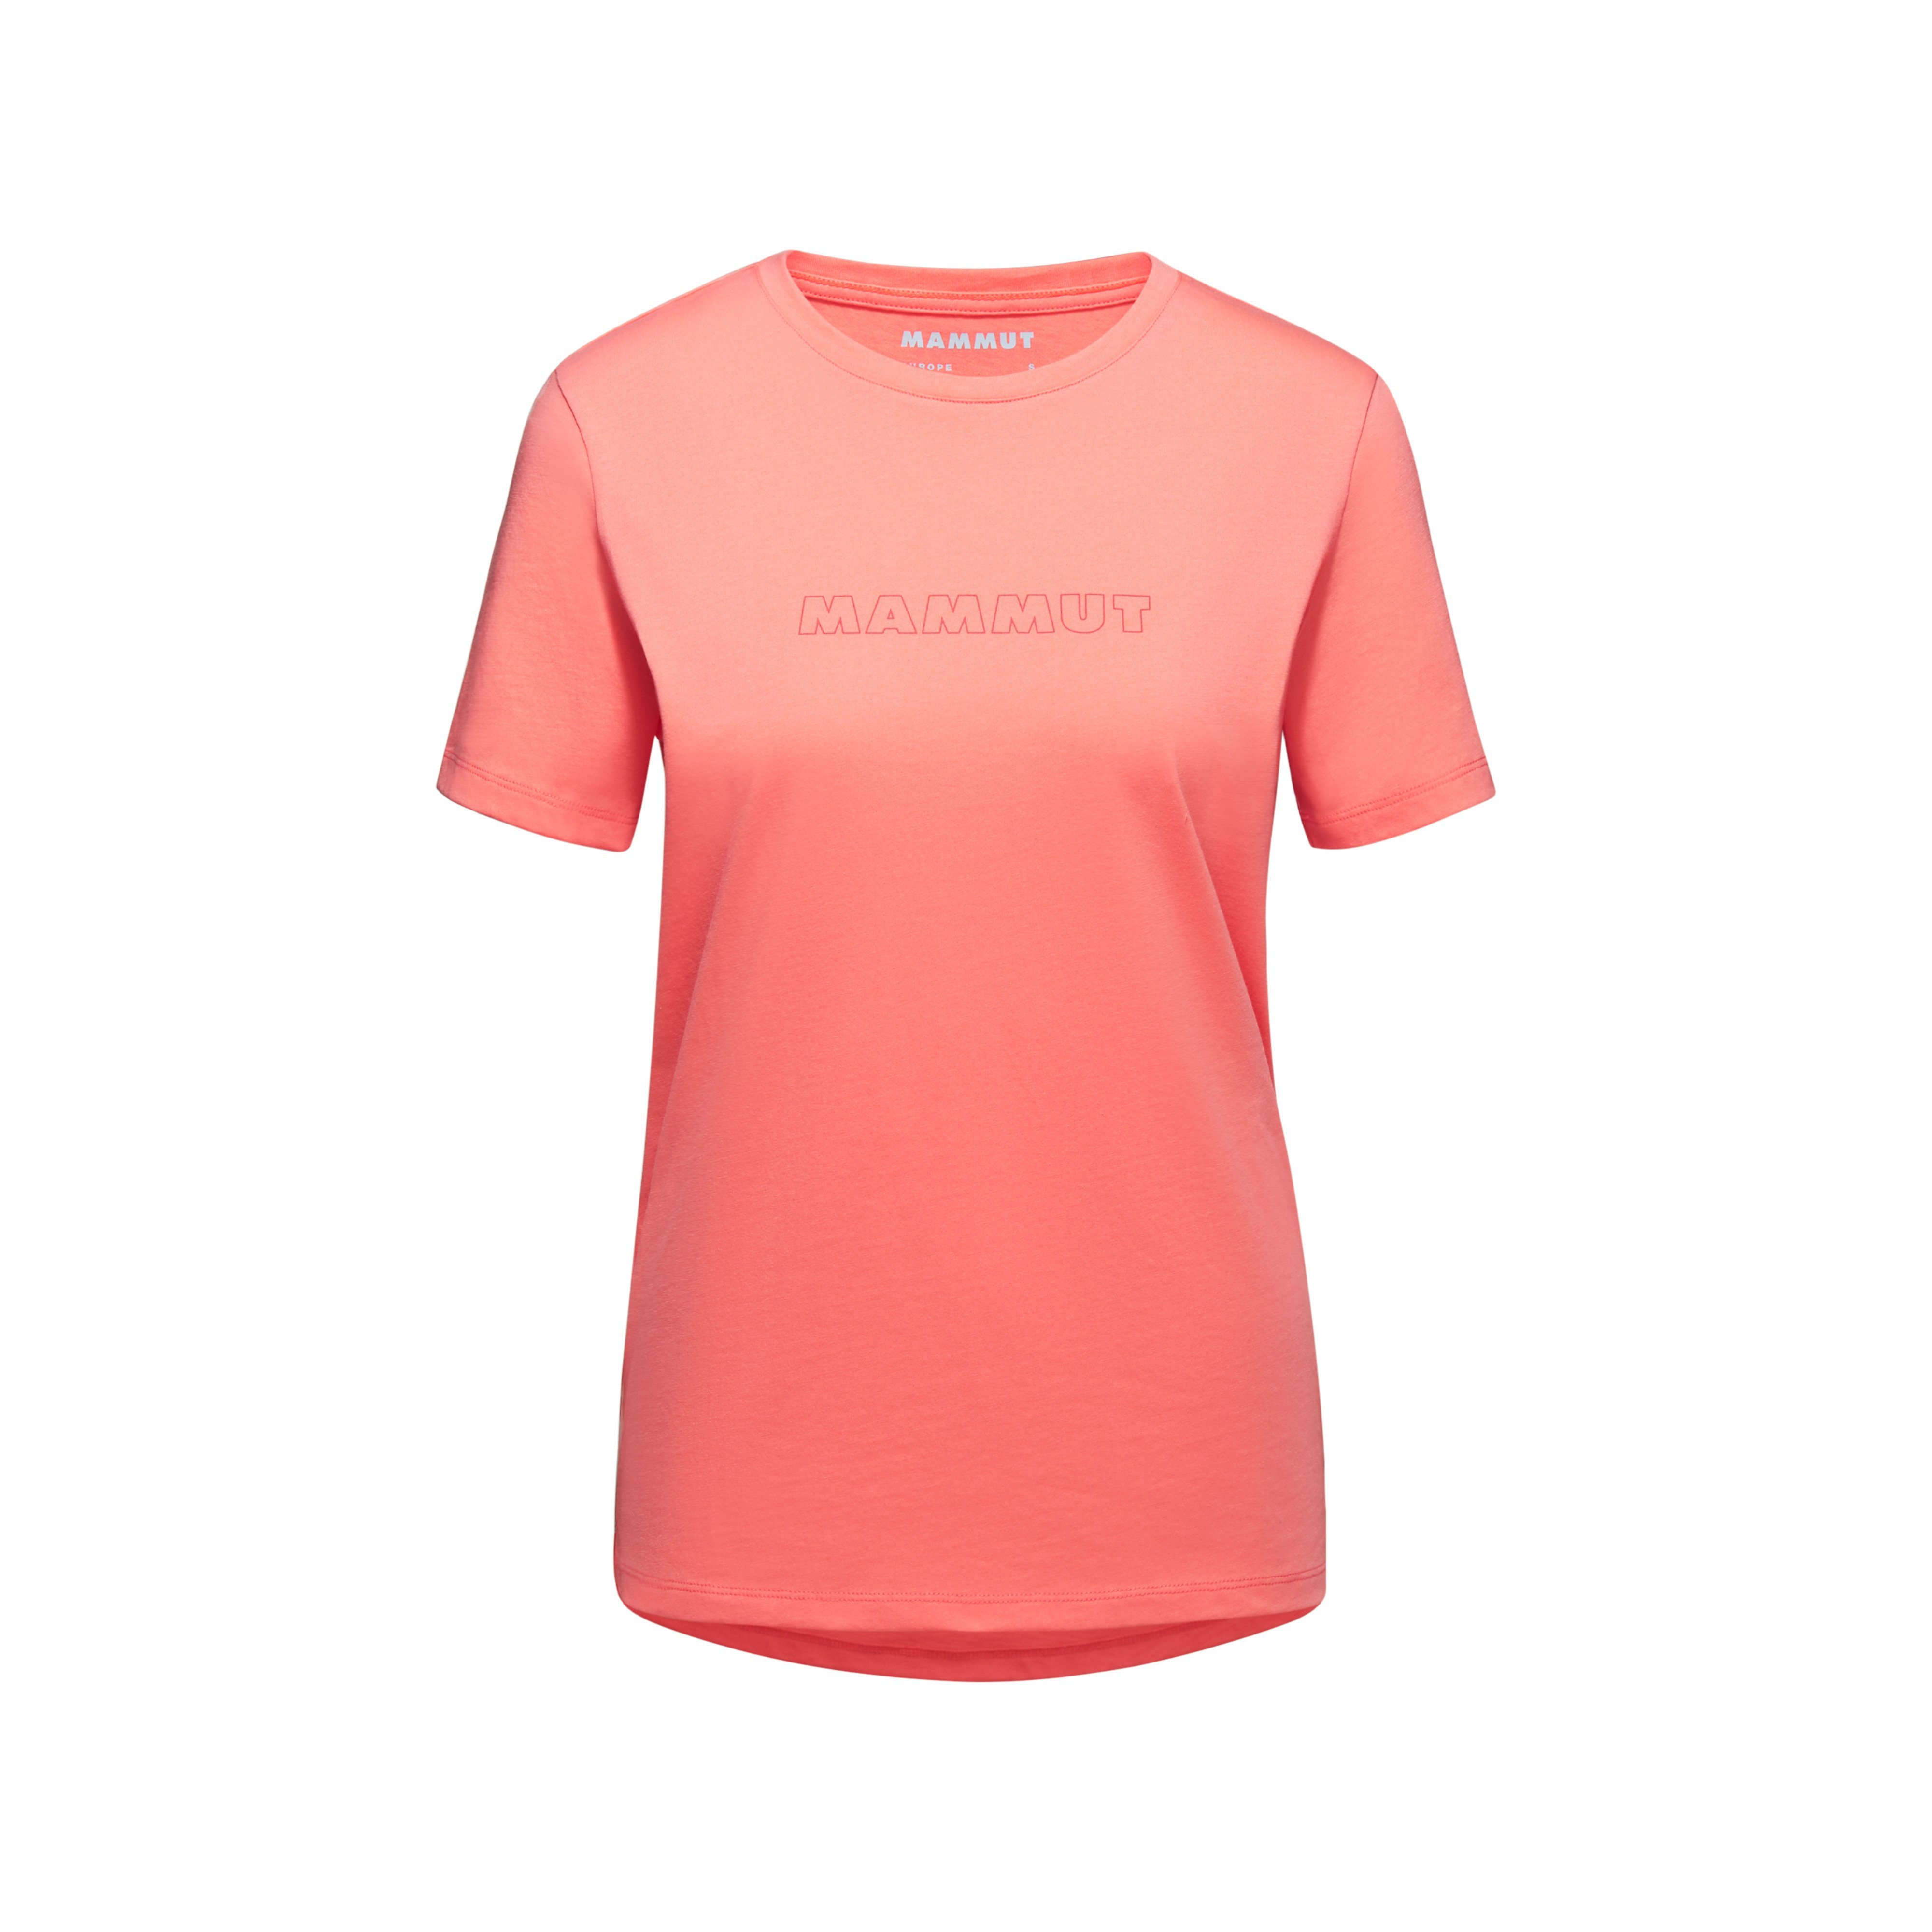 Mammut Core T-Shirt Women Logo - salmon, XS product image